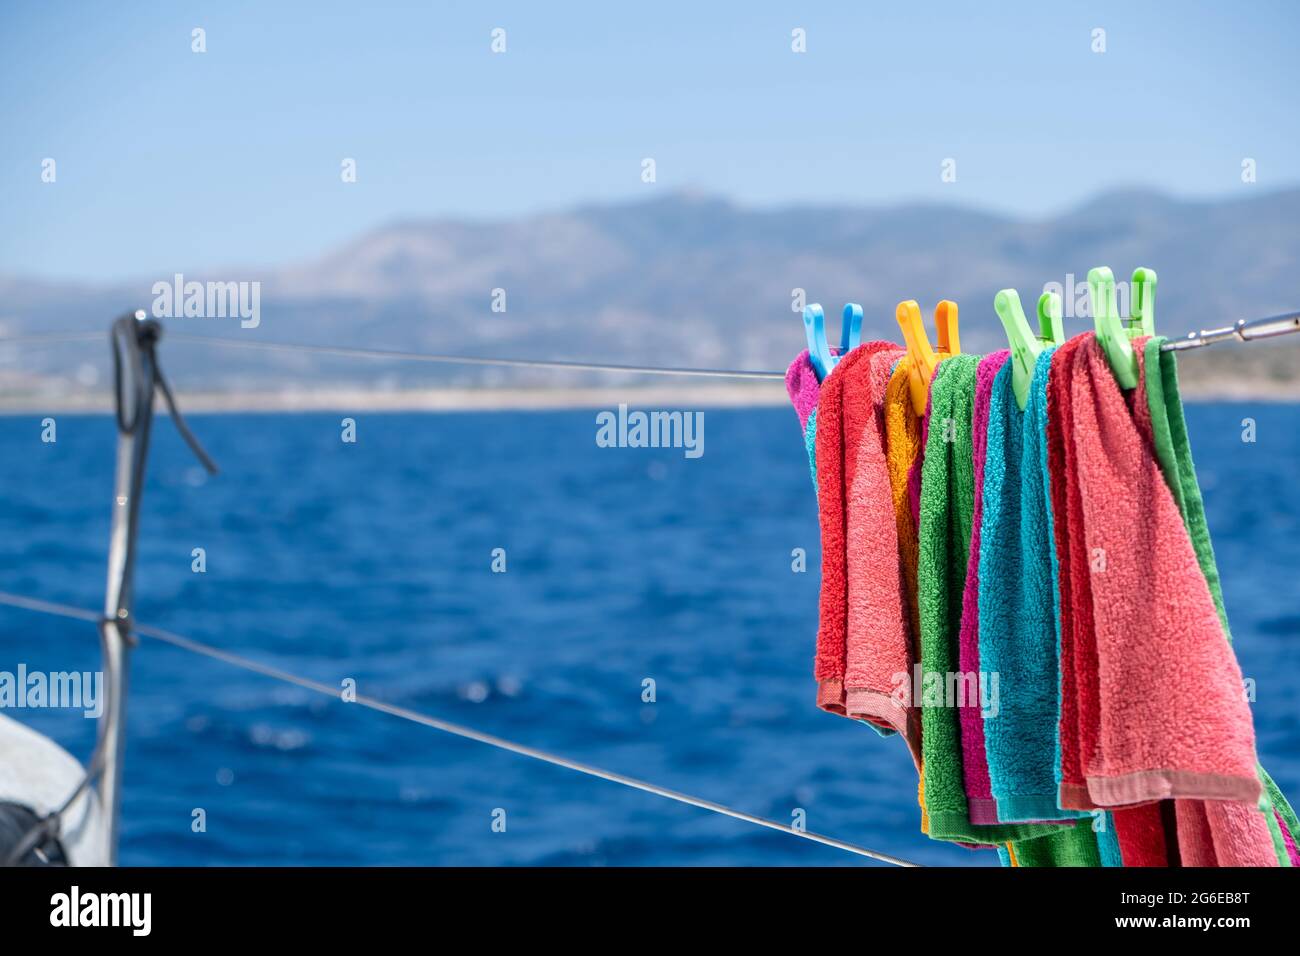 Strandtuch trocknen auf Wäscheleine, verwischen Meereshintergrund. Buntes Handtuch, das an der Edelstahlschiene des Bootes hängt. Sommerferien und Segeln, Wäsche waschen und Stockfoto